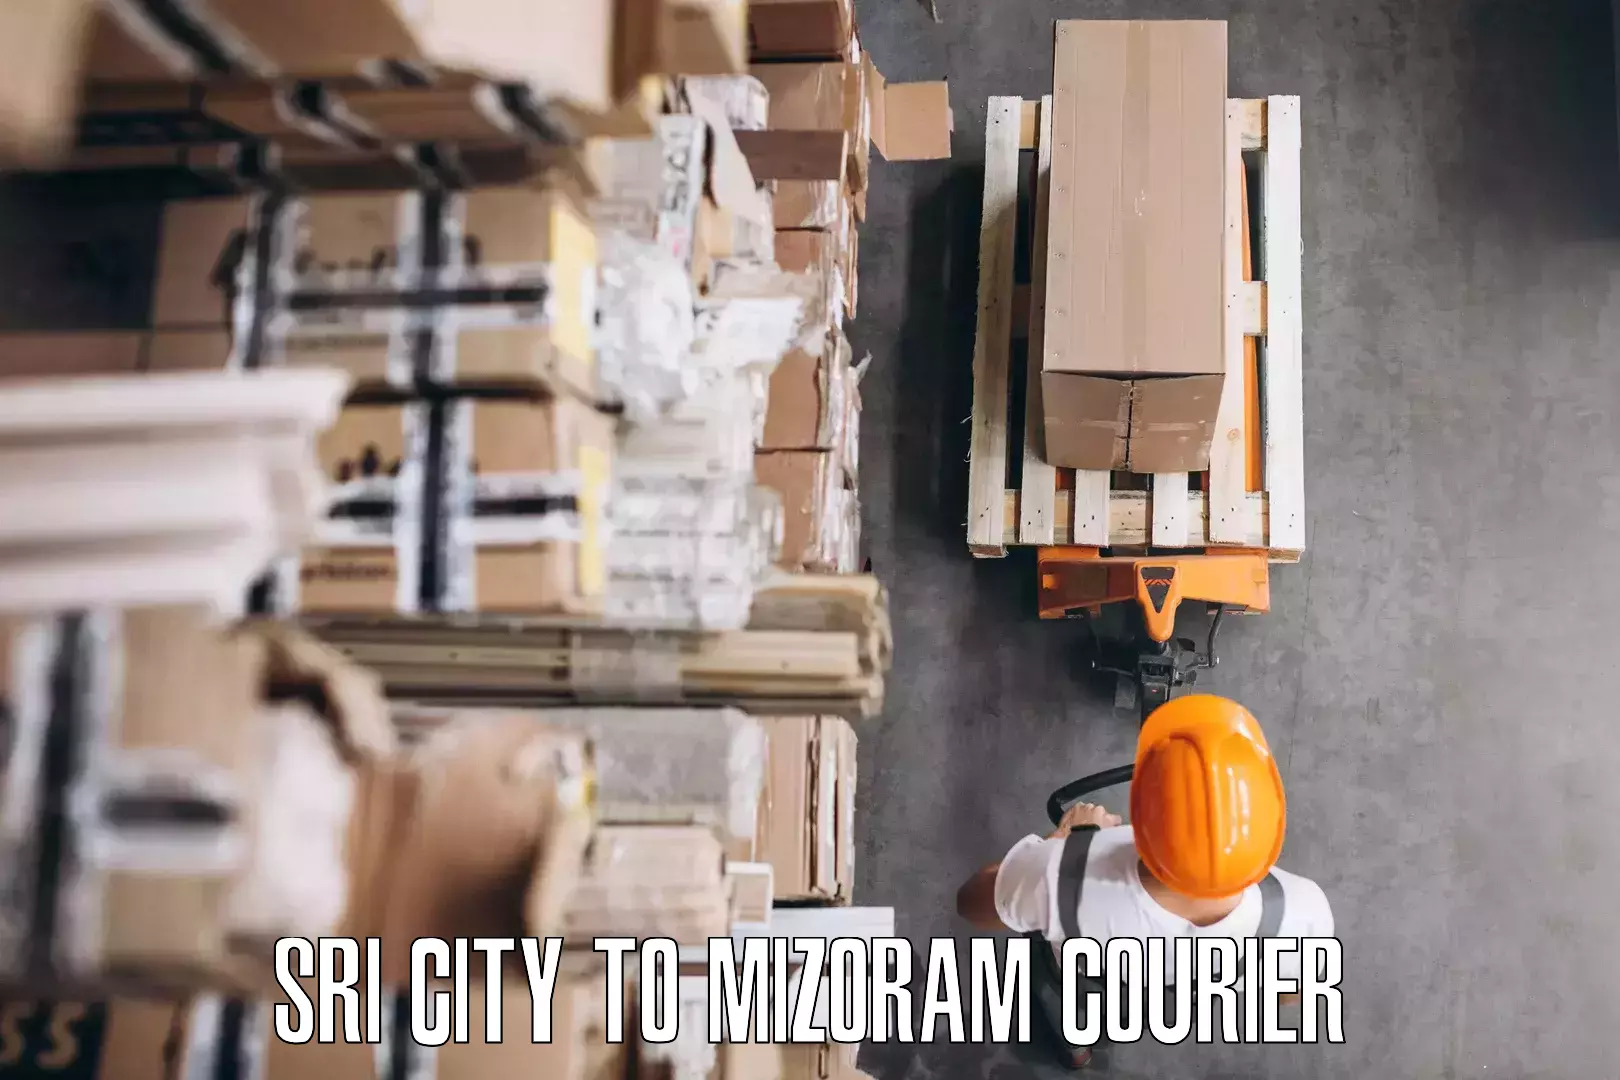 Home goods moving company Sri City to Mizoram